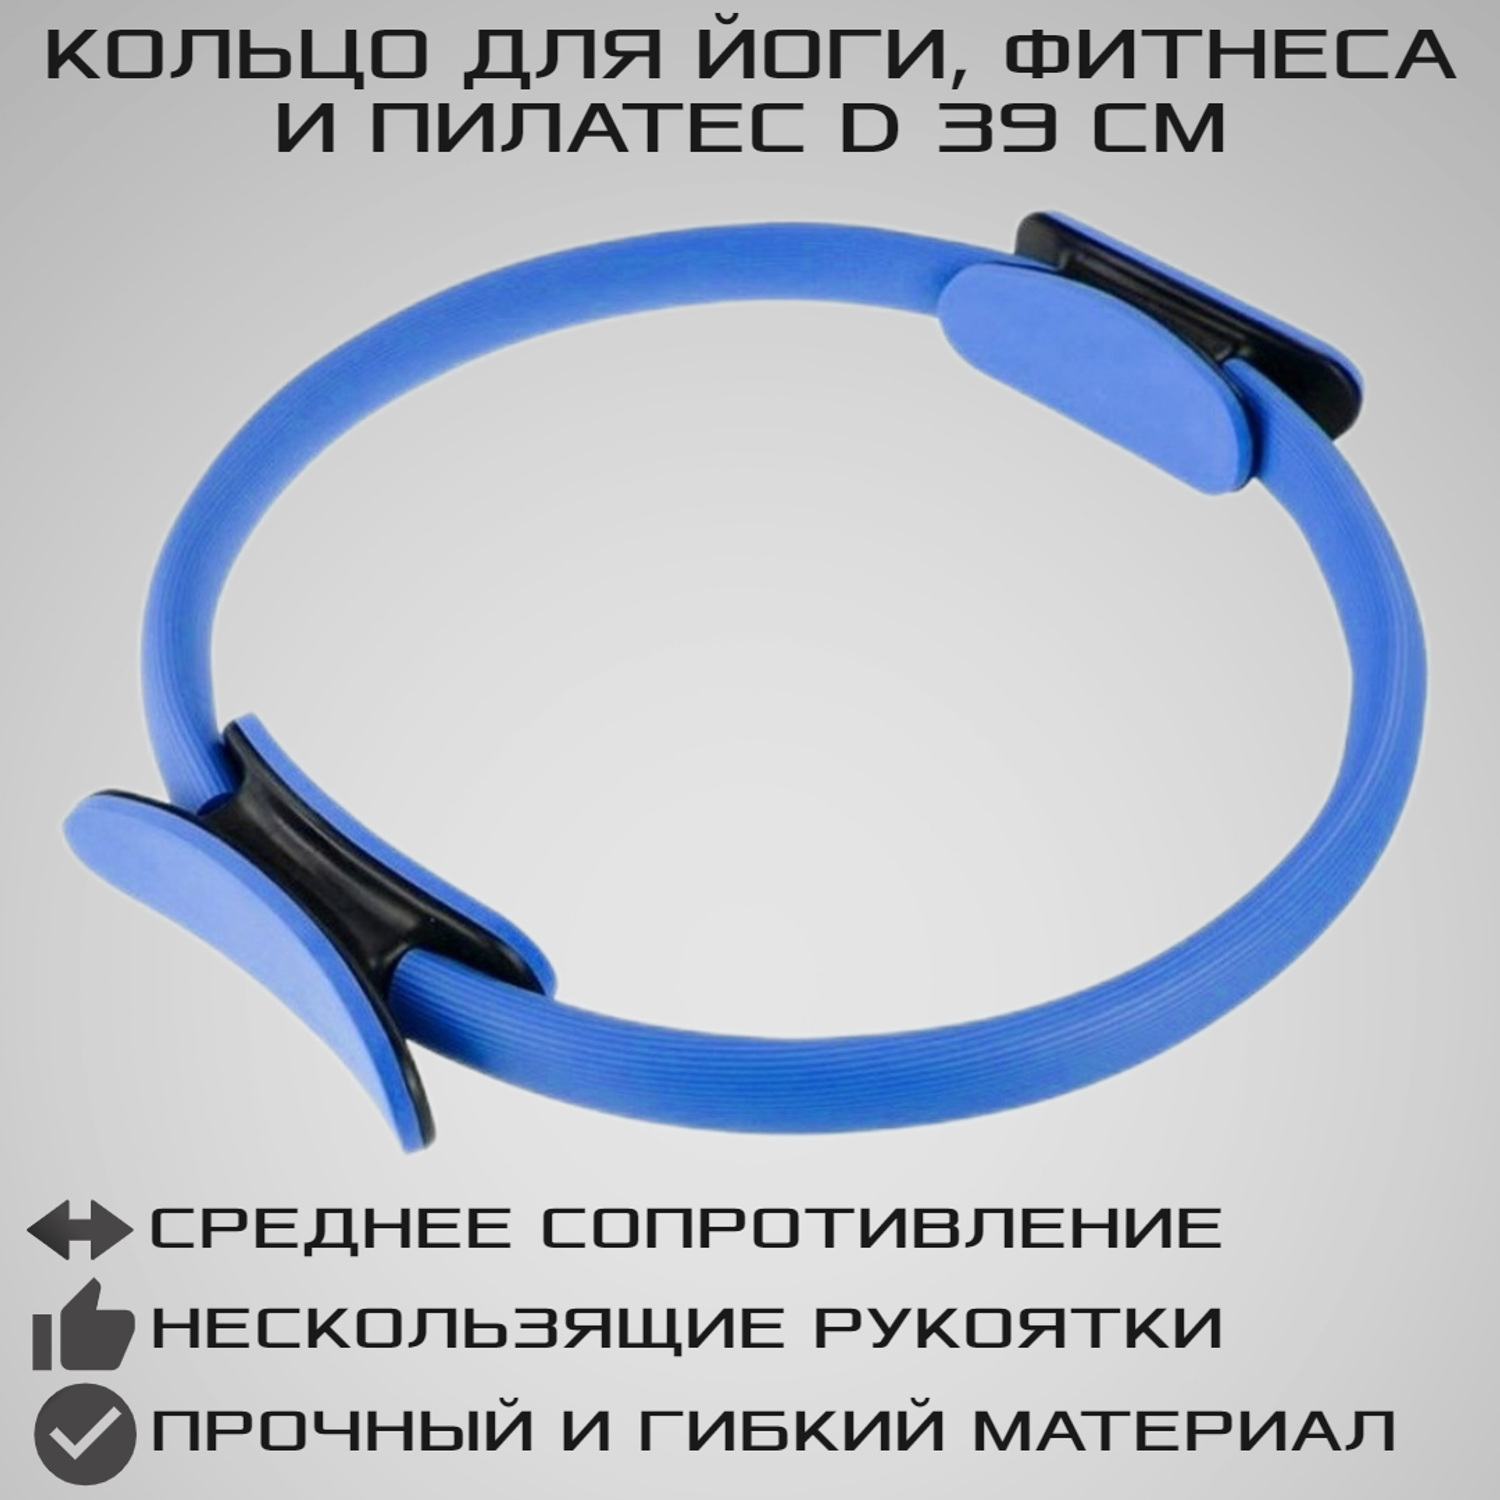 Изотоническое кольцо STRONG BODY обруч для йоги и пилатес d 38 см синее - фото 1